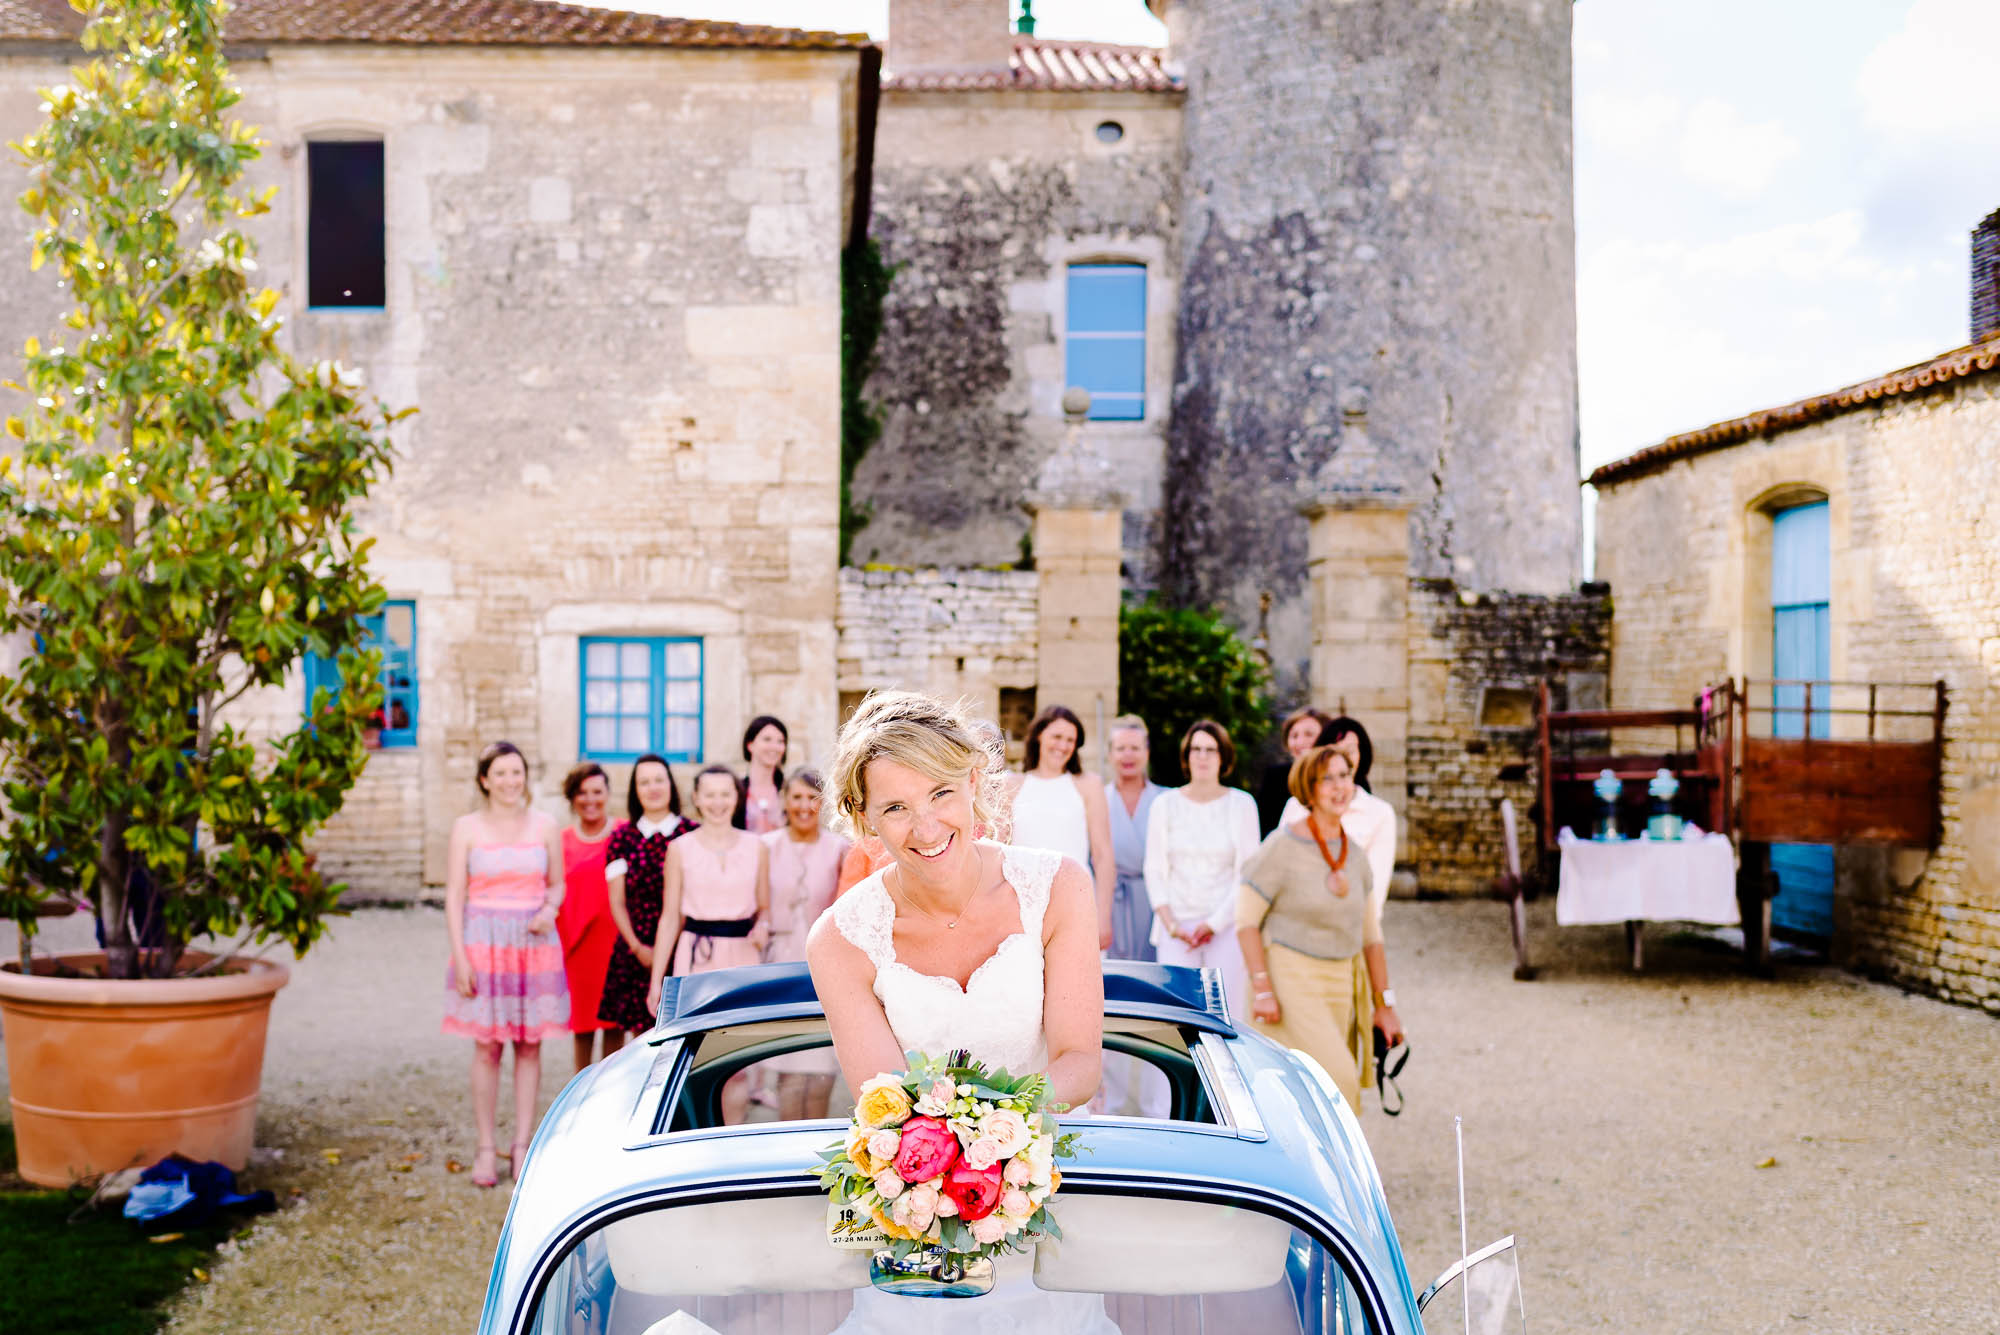 Lancer de bouquet loirs d'un mariage à Arles